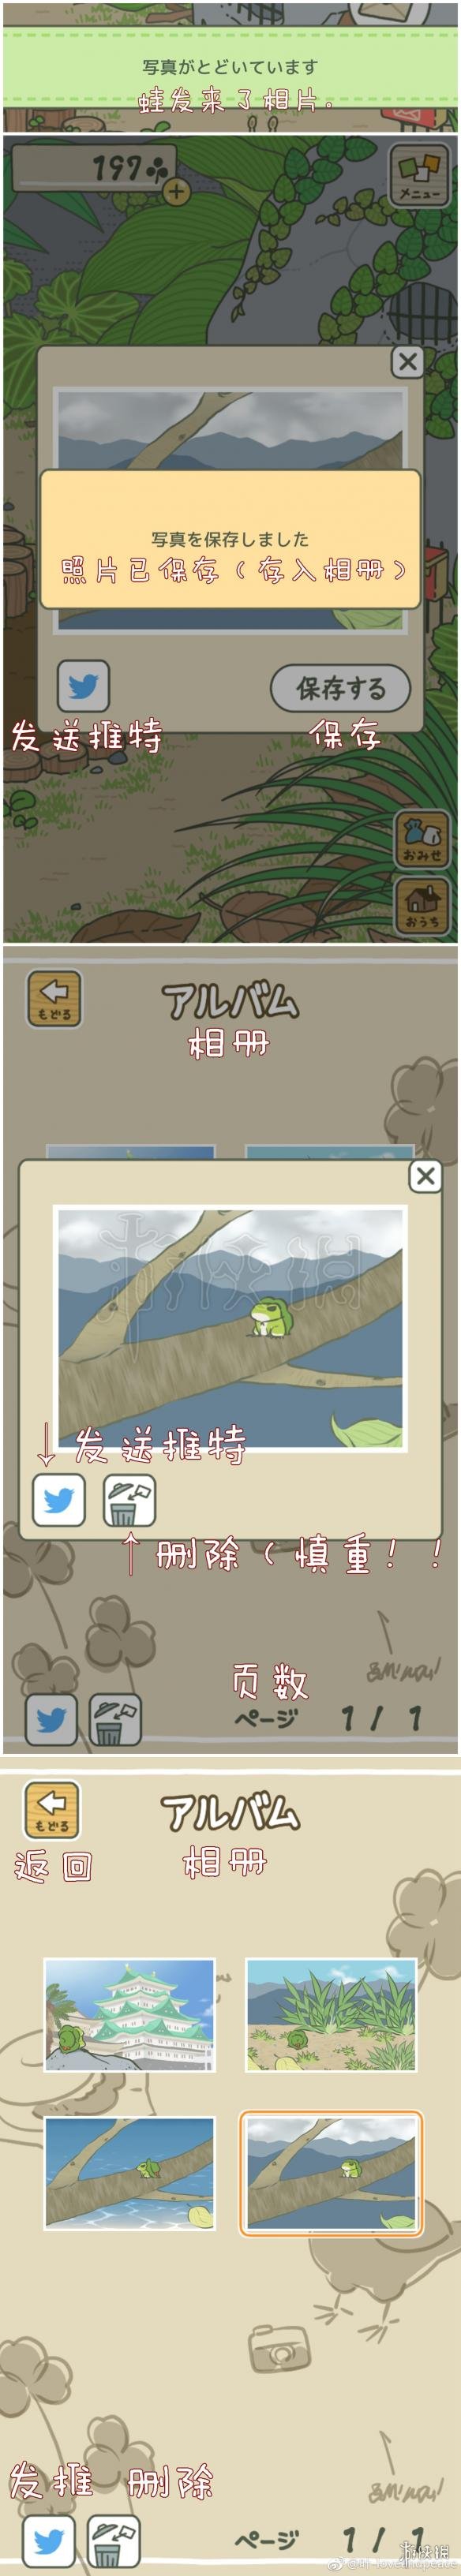 《旅行青蛙》中文攻略 旅行青蛙图文攻略教程